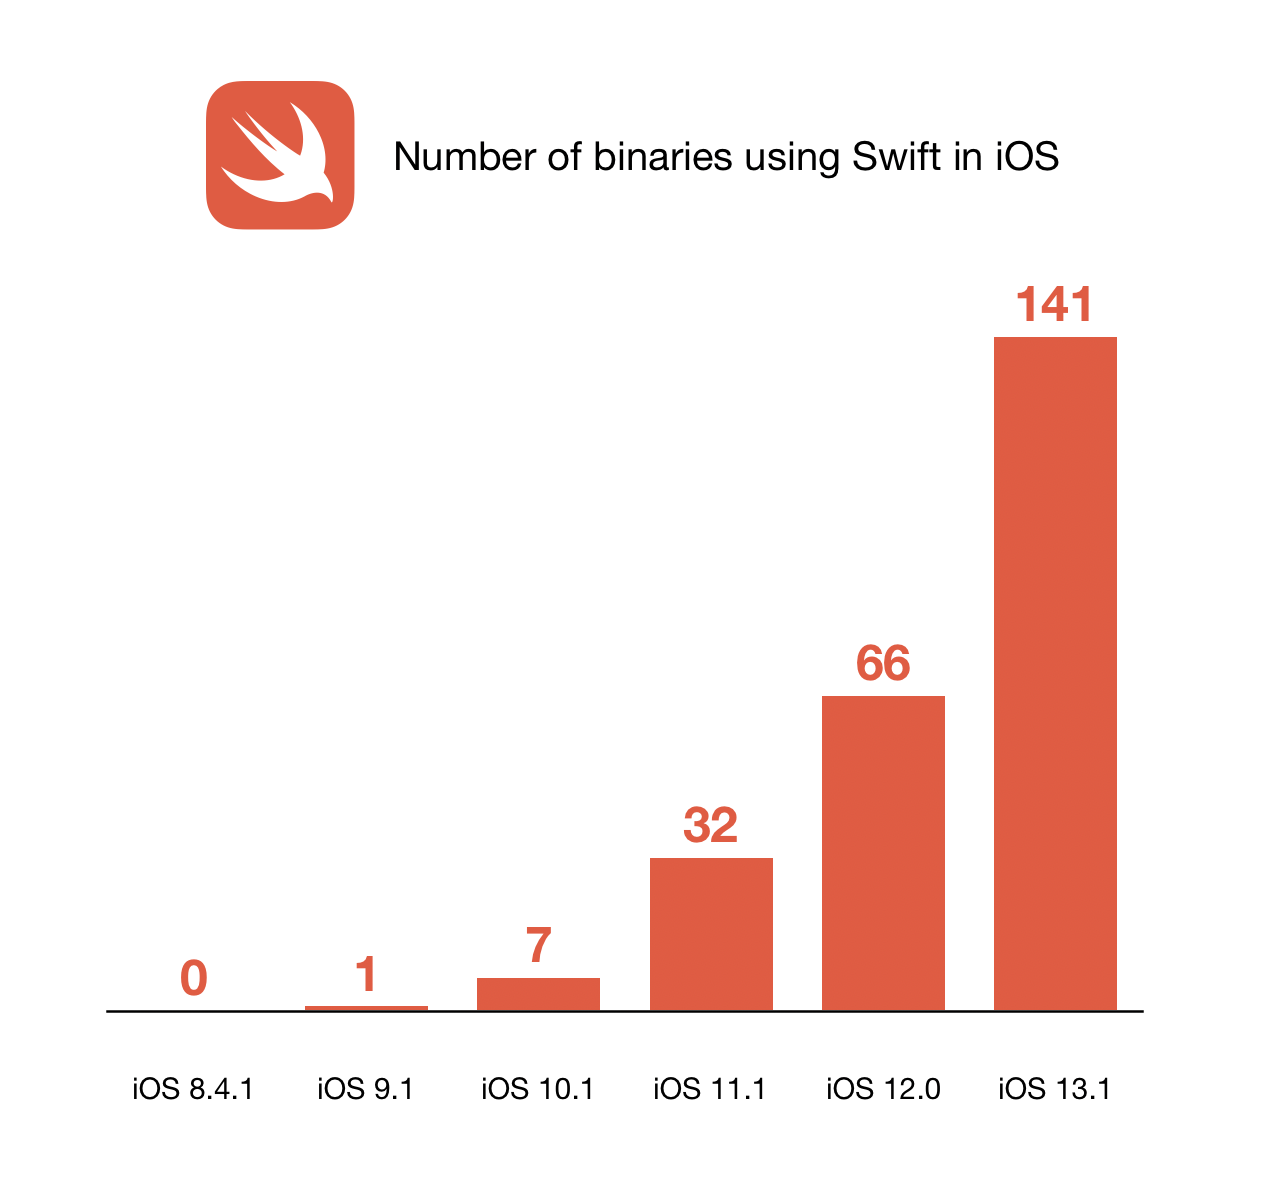 蘋果在 iOS 13 中對 Swift 的使用量增加一倍以上 | App Store, App開發者, iOS 13, Swift | iPhone News 愛瘋了